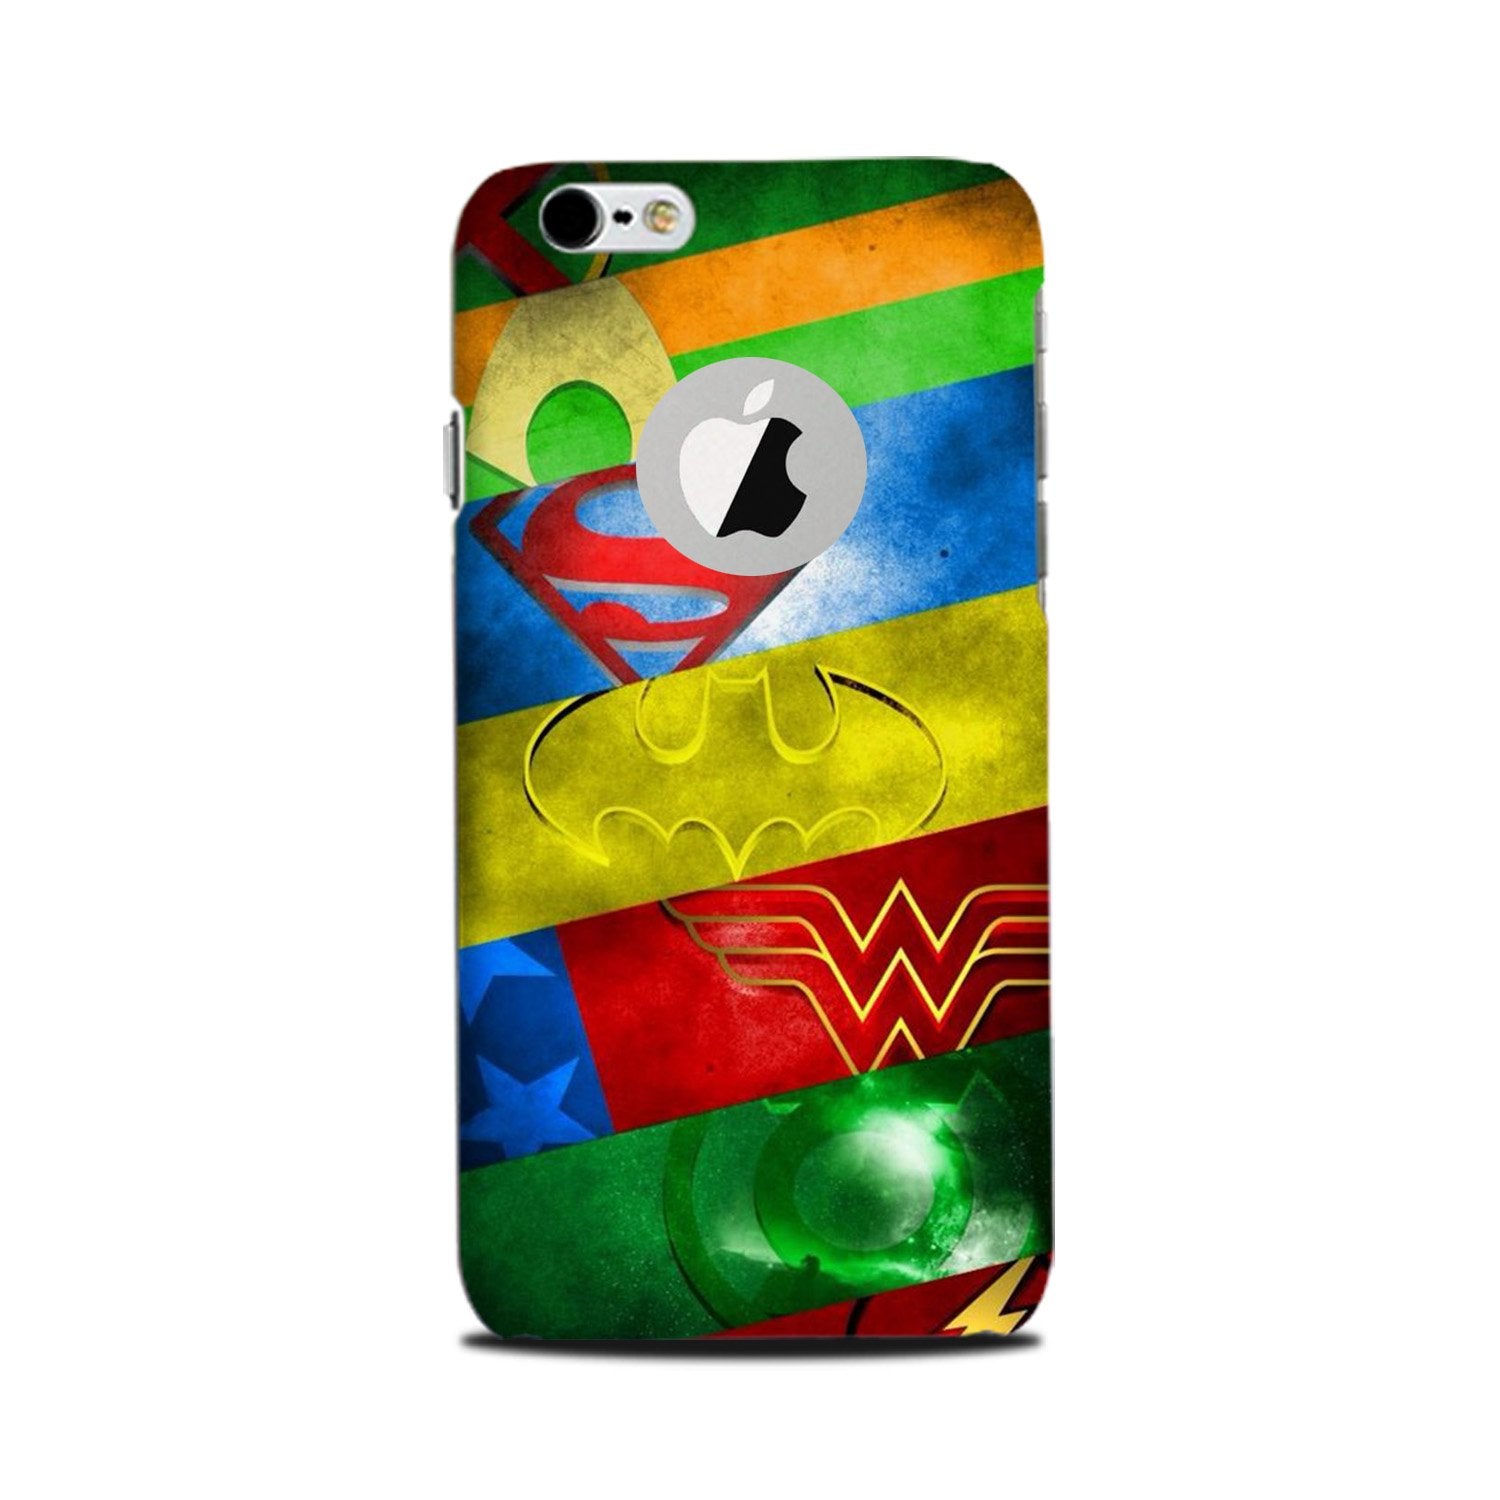 Superheros Logo Case for iPhone 6 Plus / 6s Plus logo cut(Design No. 251)